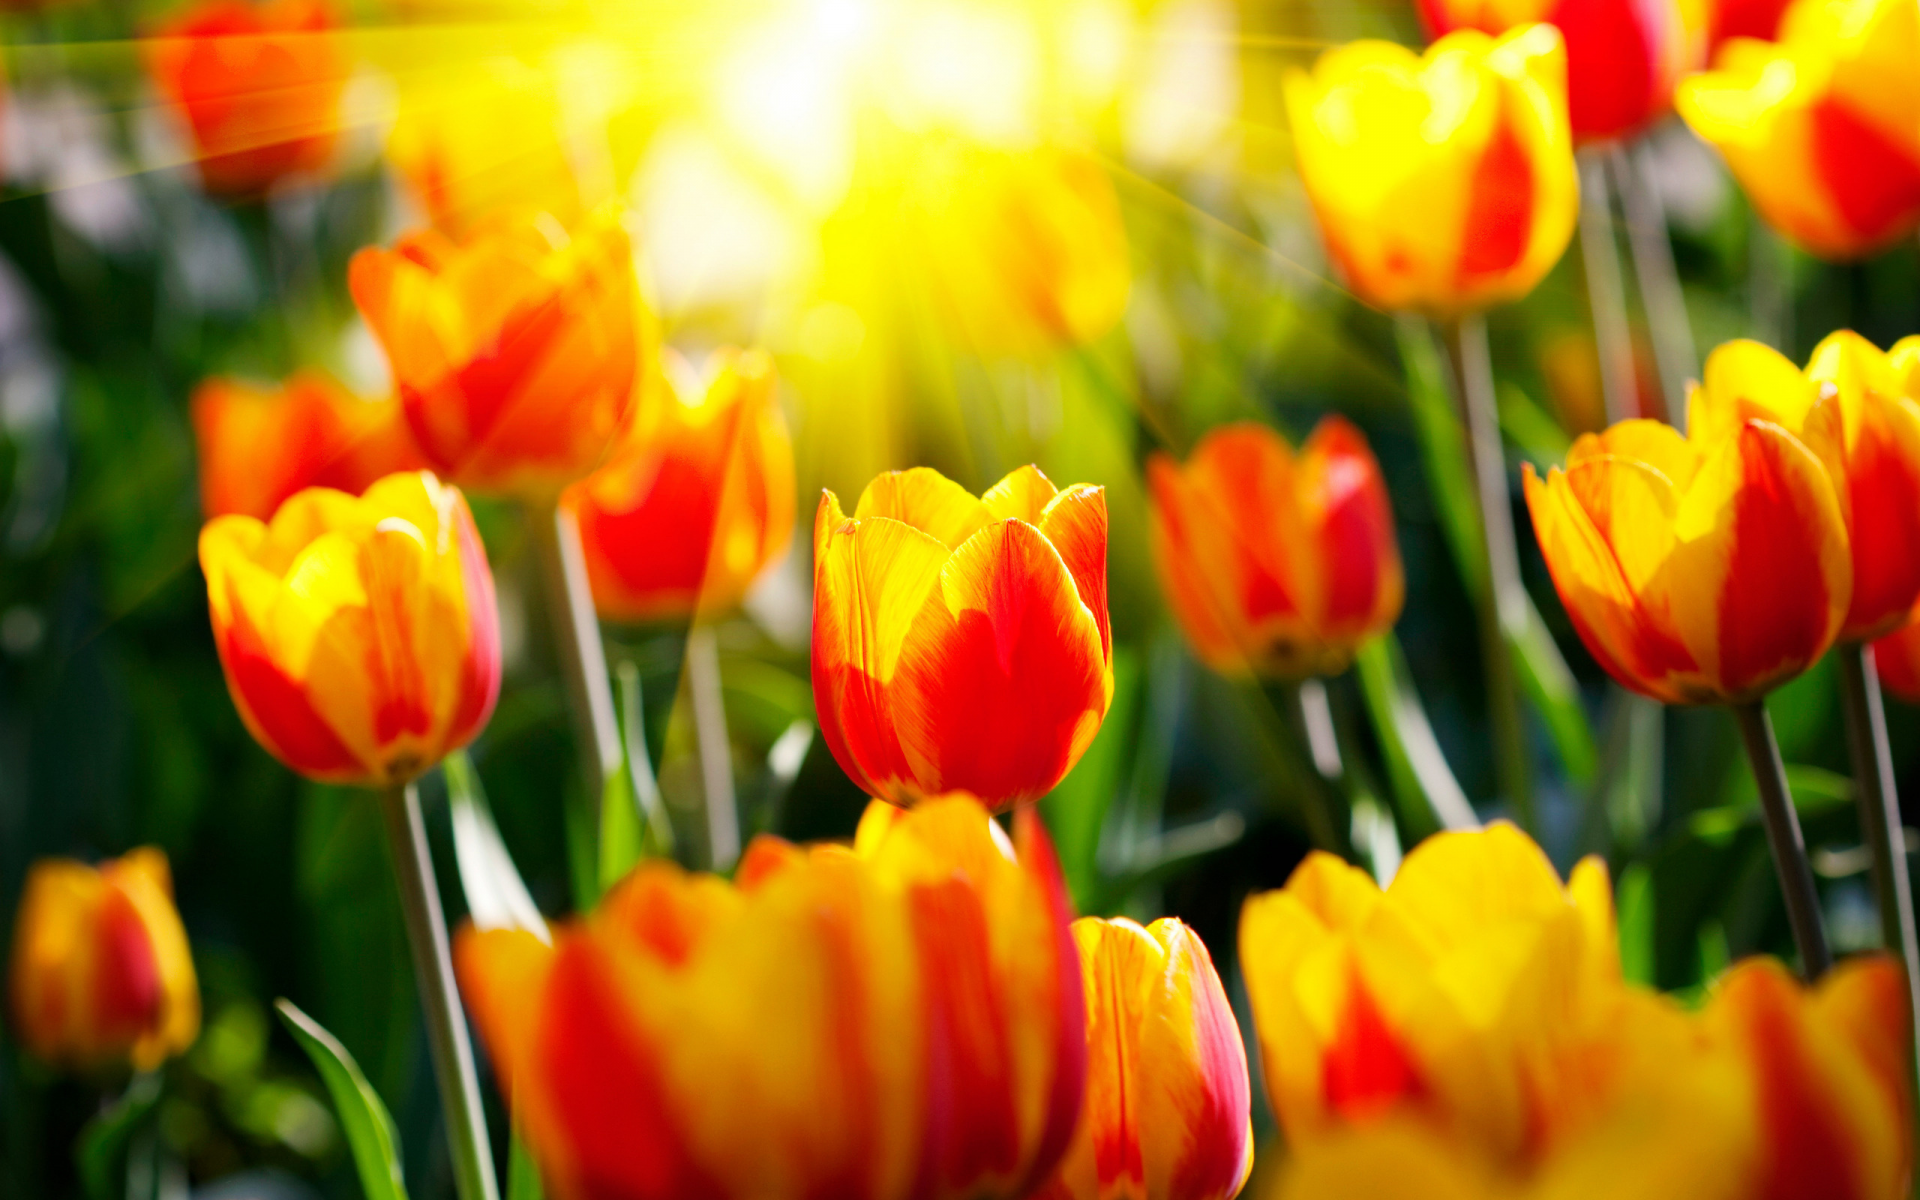 весенние обои, сад, красивые обои для рабочего стола, фото, светл, парки, солнце, цветы, весна, природа, лучи, тюльпаны